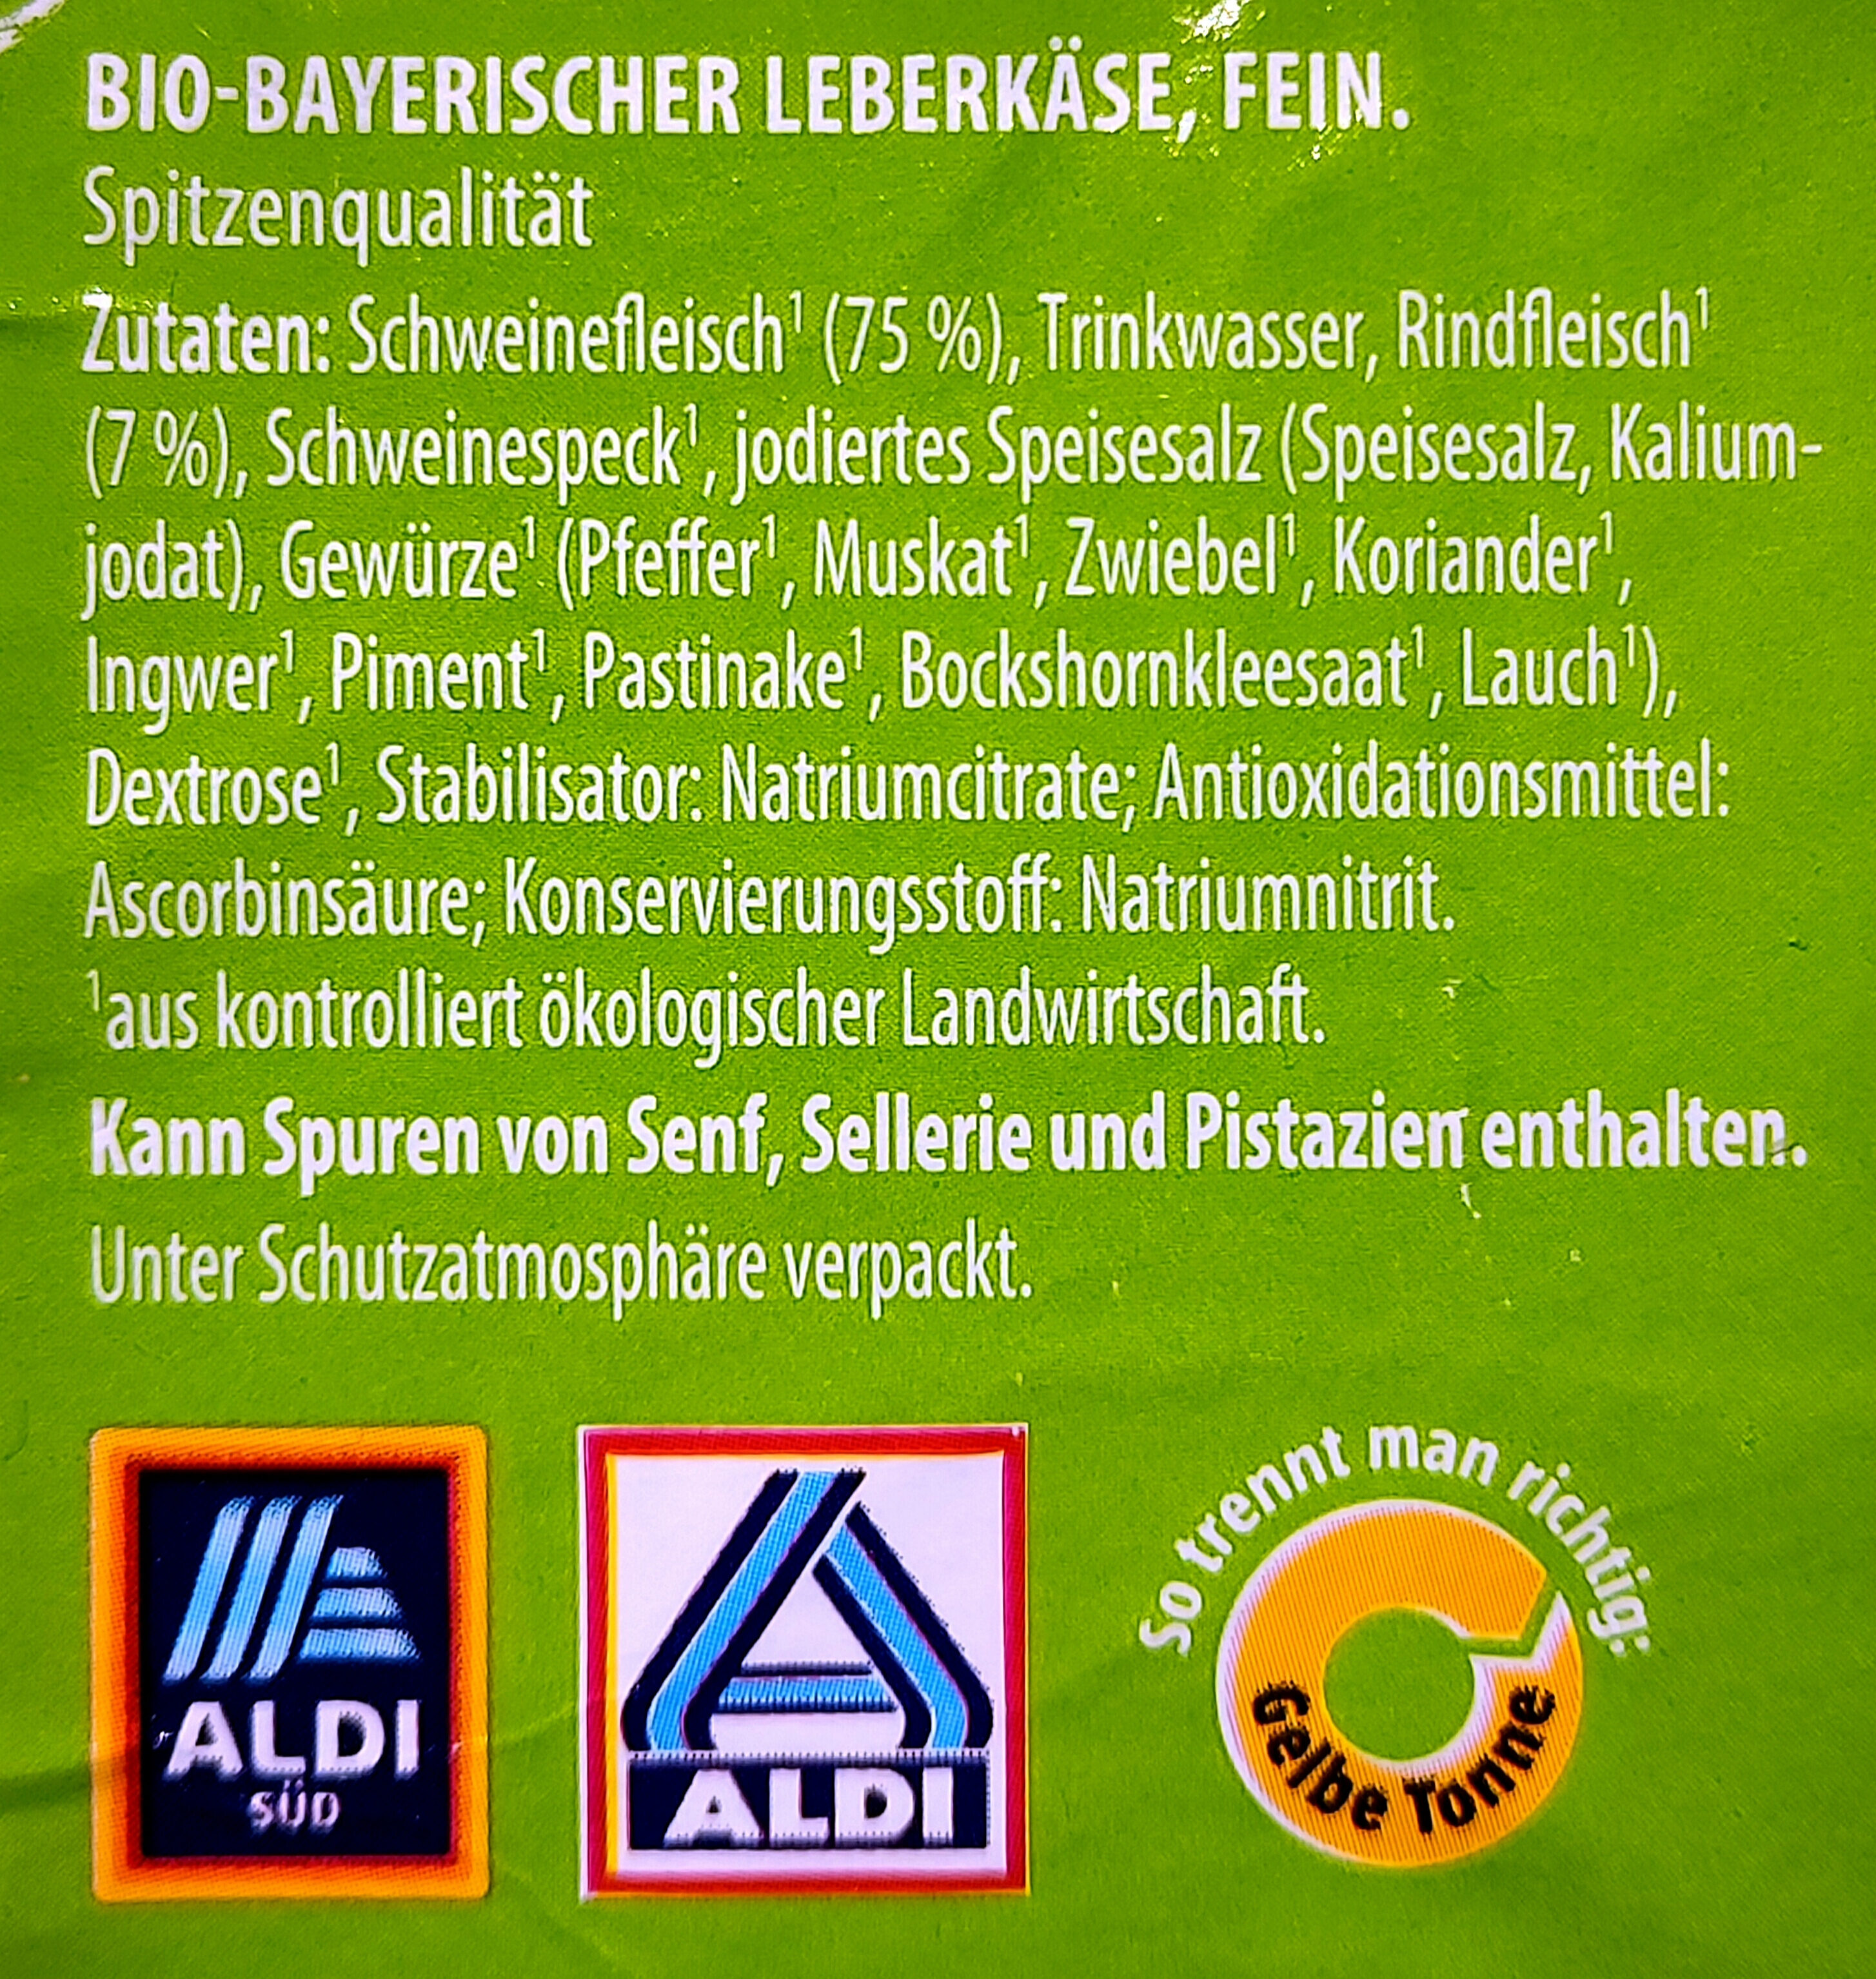 Bayerischer Bio-Leberkäse, fein - Zutaten